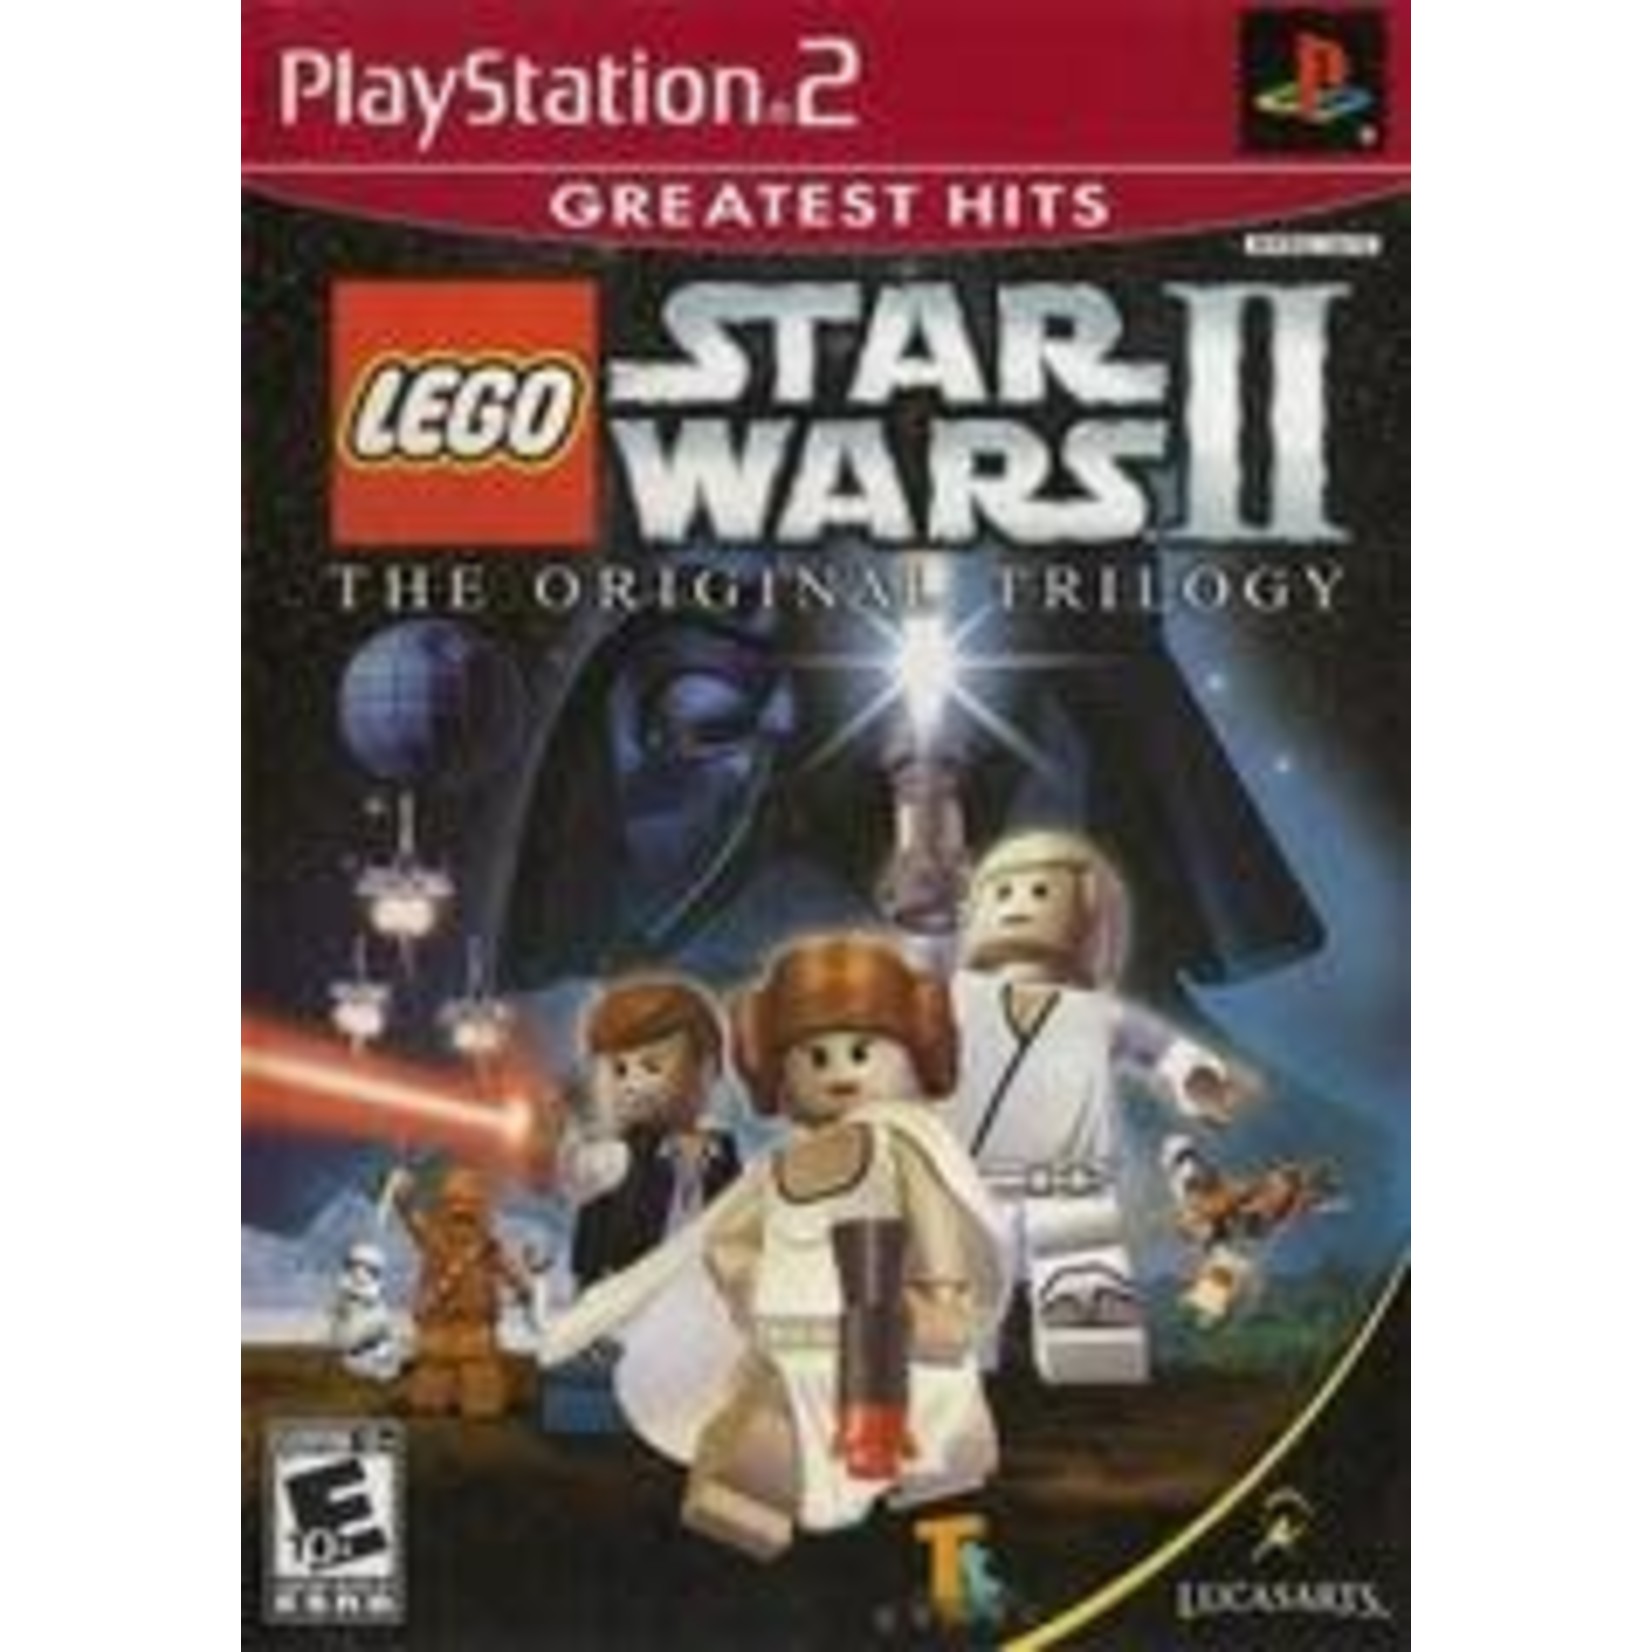 Playstation LEGO Star Wars II Original Trilogy [Greatest Hits] [Playstation 2]